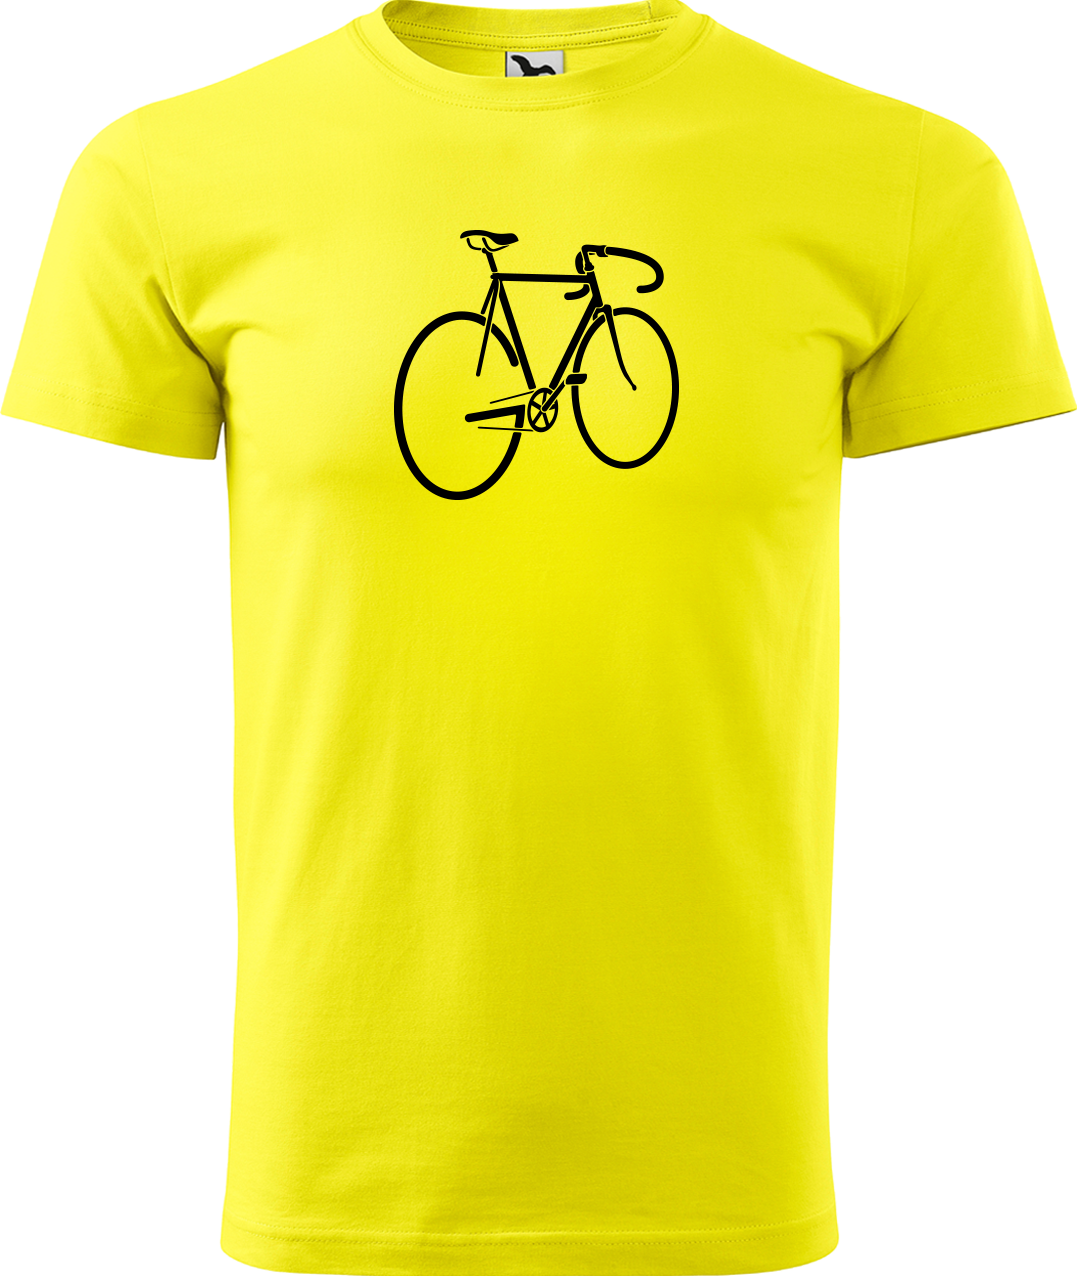 Pánské tričko s kolem - Pánské kolo Velikost: L, Barva: Žlutá (04)